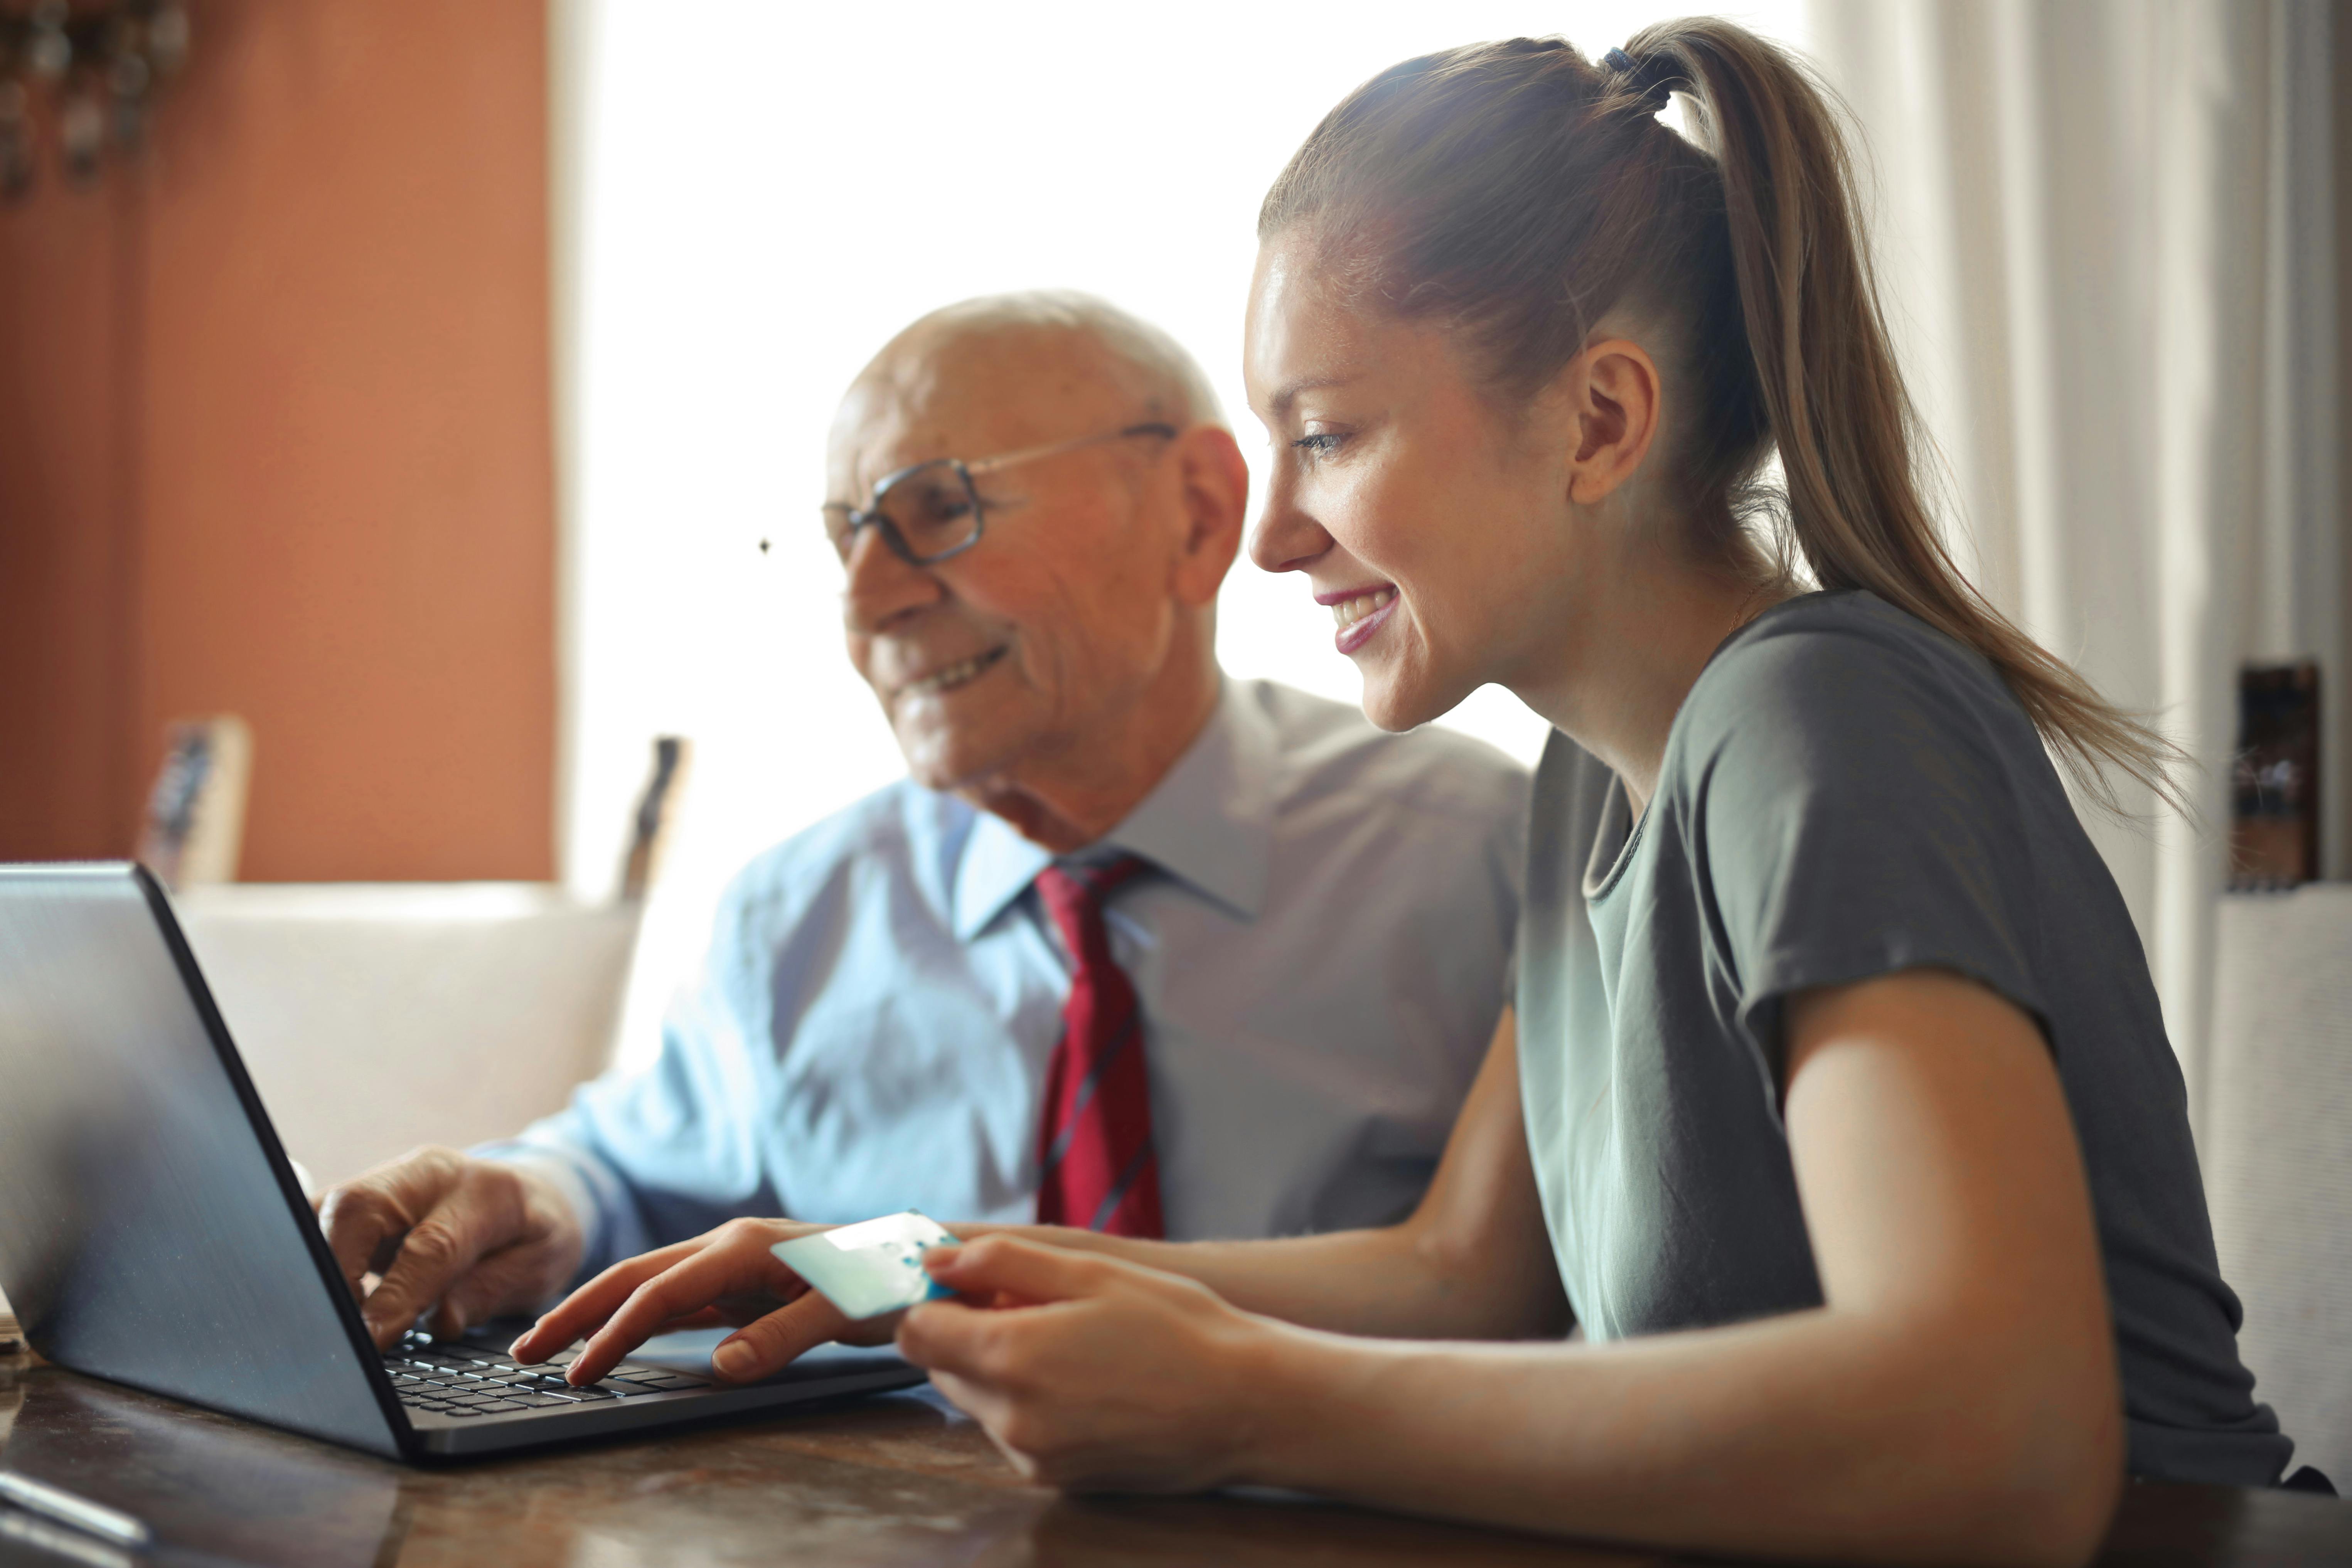 Une jeune femme enseigne l'utilisation d'un ordinateur à un homme âgé, illustrant l'apprentissage intergénérationnel.